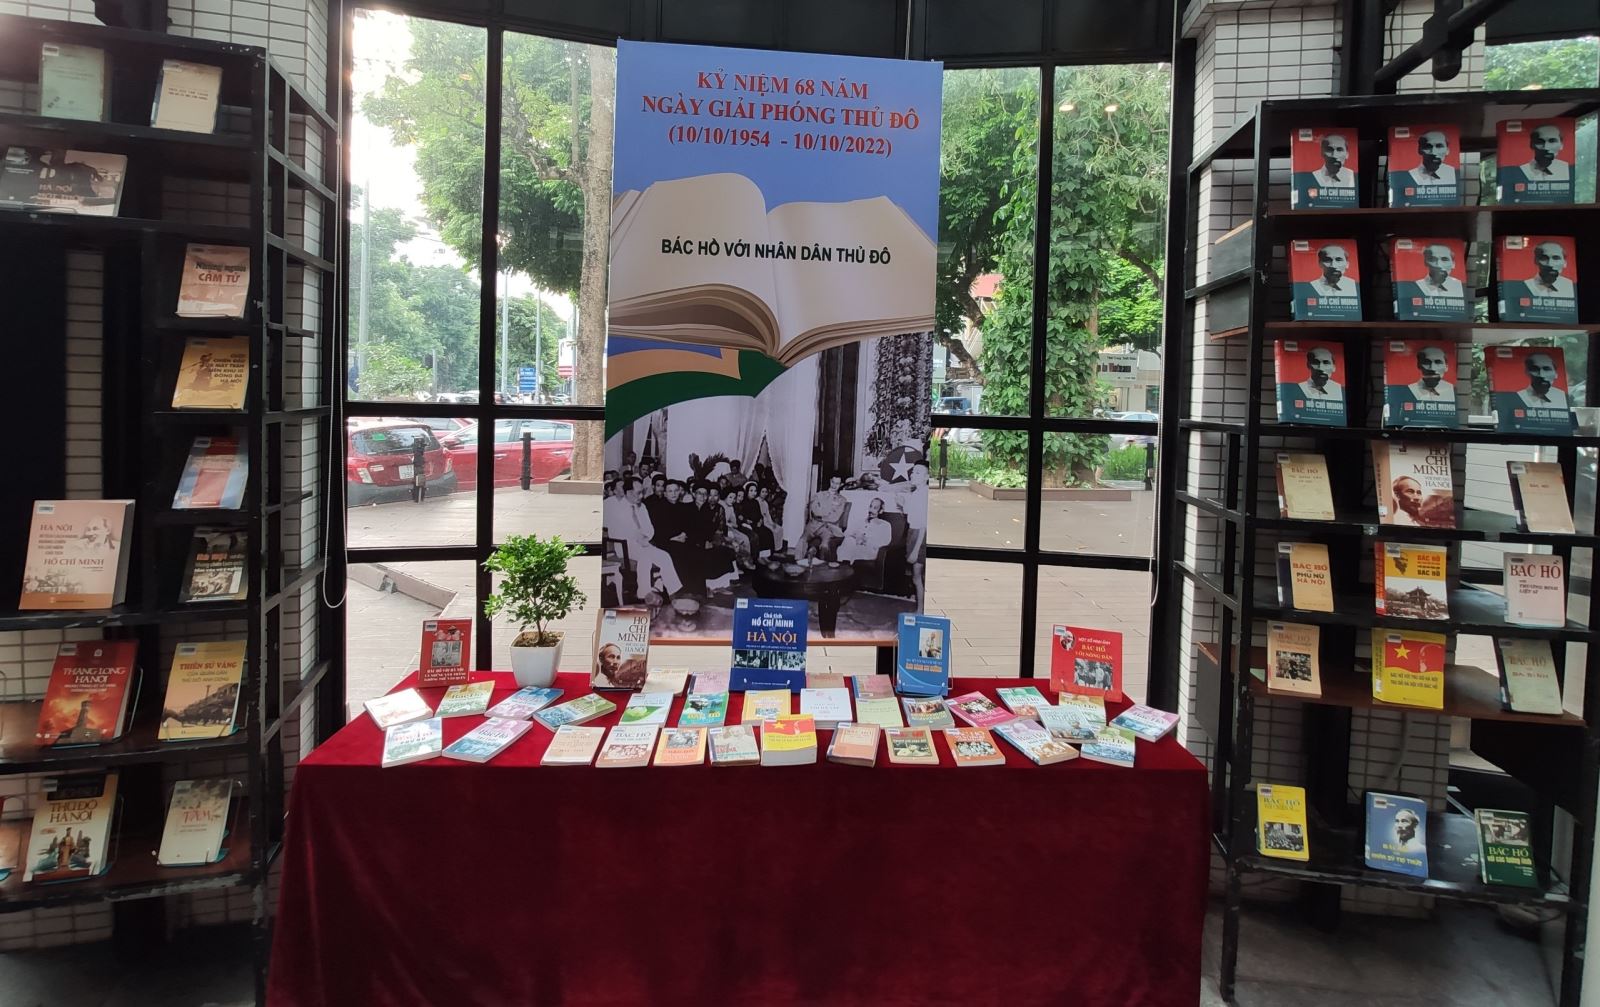 Thư viện Hà Nội: trưng bày sách, báo kỷ niệm 68 năm ngày Giải phóng Thủ đô